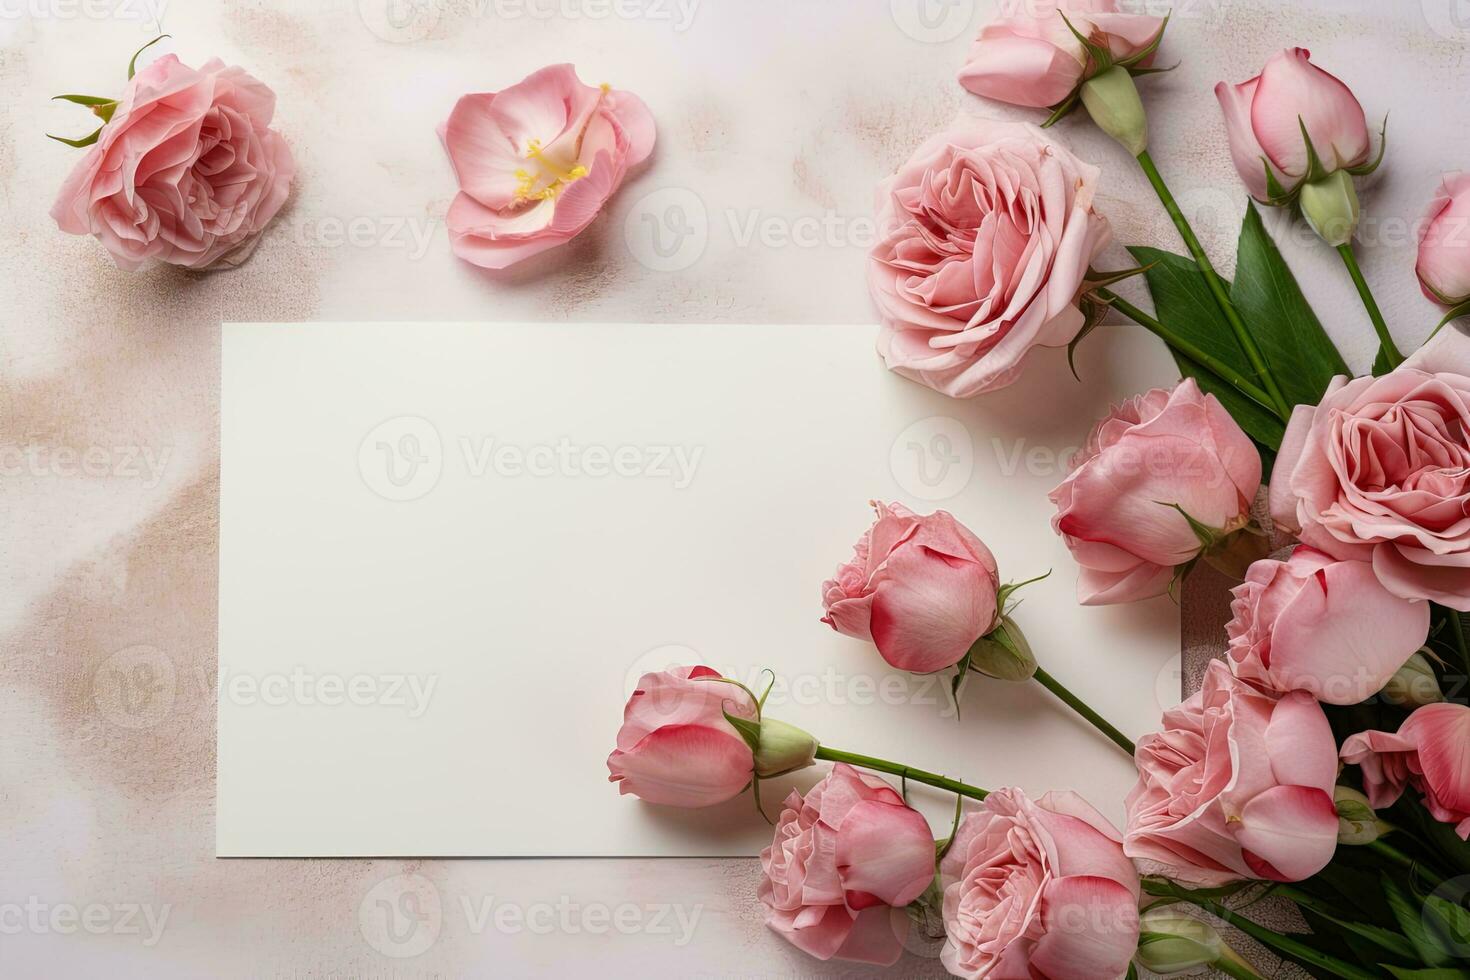 brincar branco em branco papel Folha com Rosa rosas flores topo Visão sobre, floral modelo esvaziar cartão plano deitar para Projeto com cópia de espaço foto